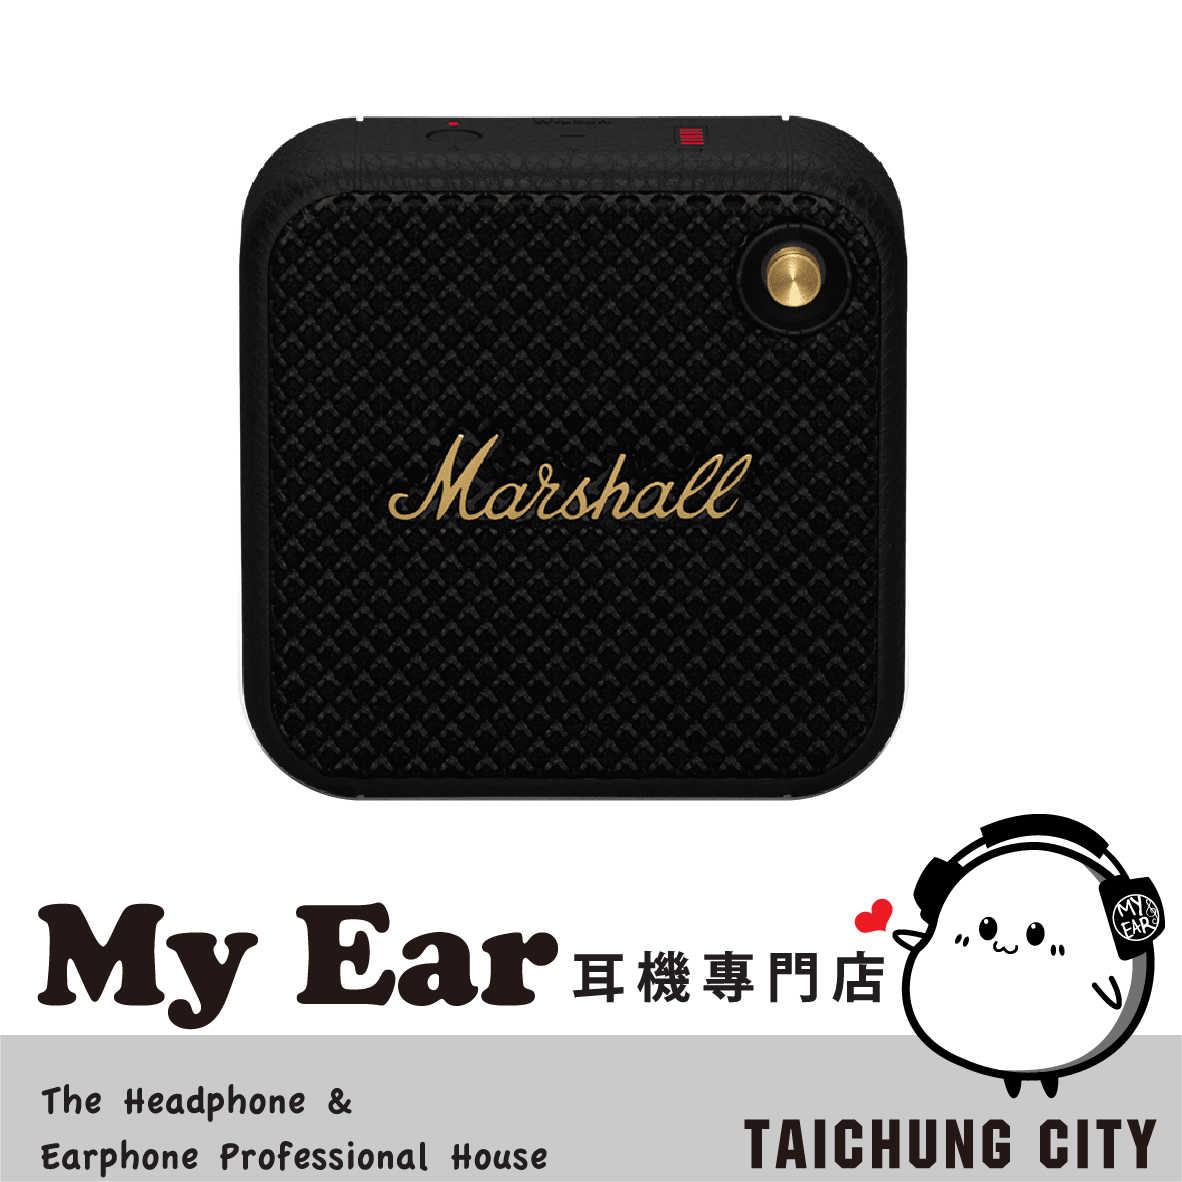 Marshall 馬歇爾 Willen 古銅黑 內置麥克風 IP67 攜帶式 藍芽喇叭 | My Ear 耳機專門店